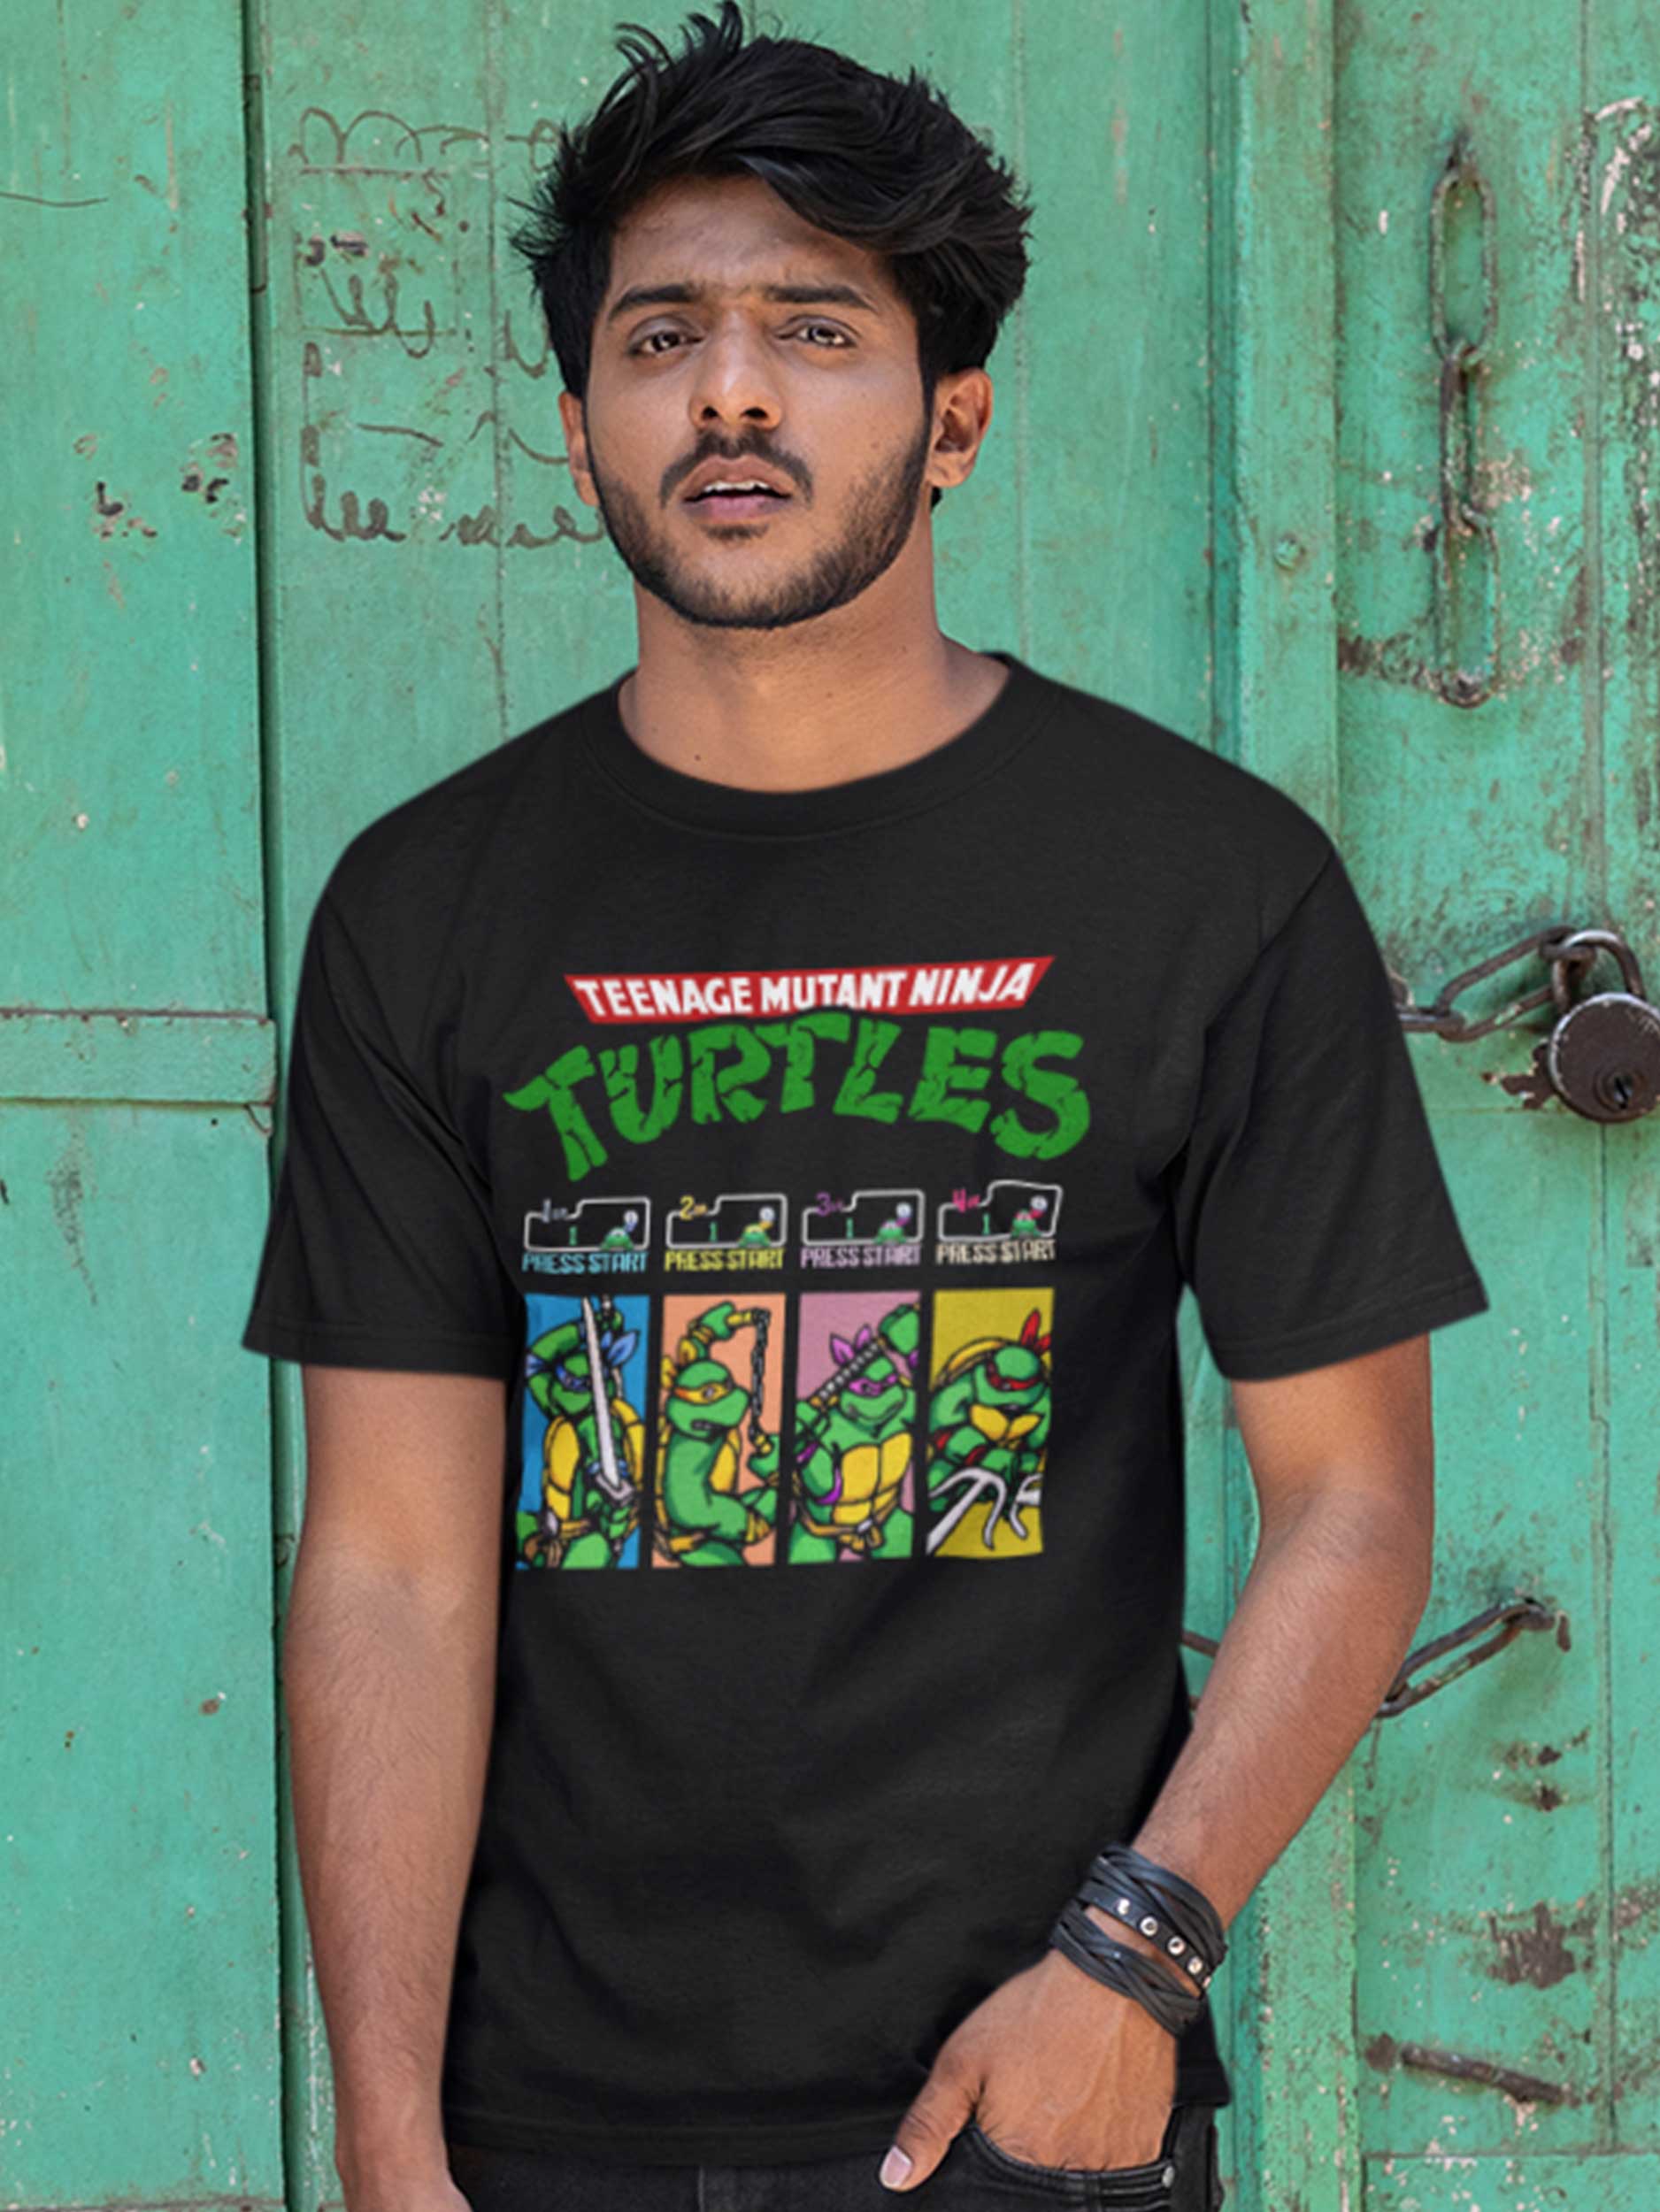 Camiseta Tortugas Ninja